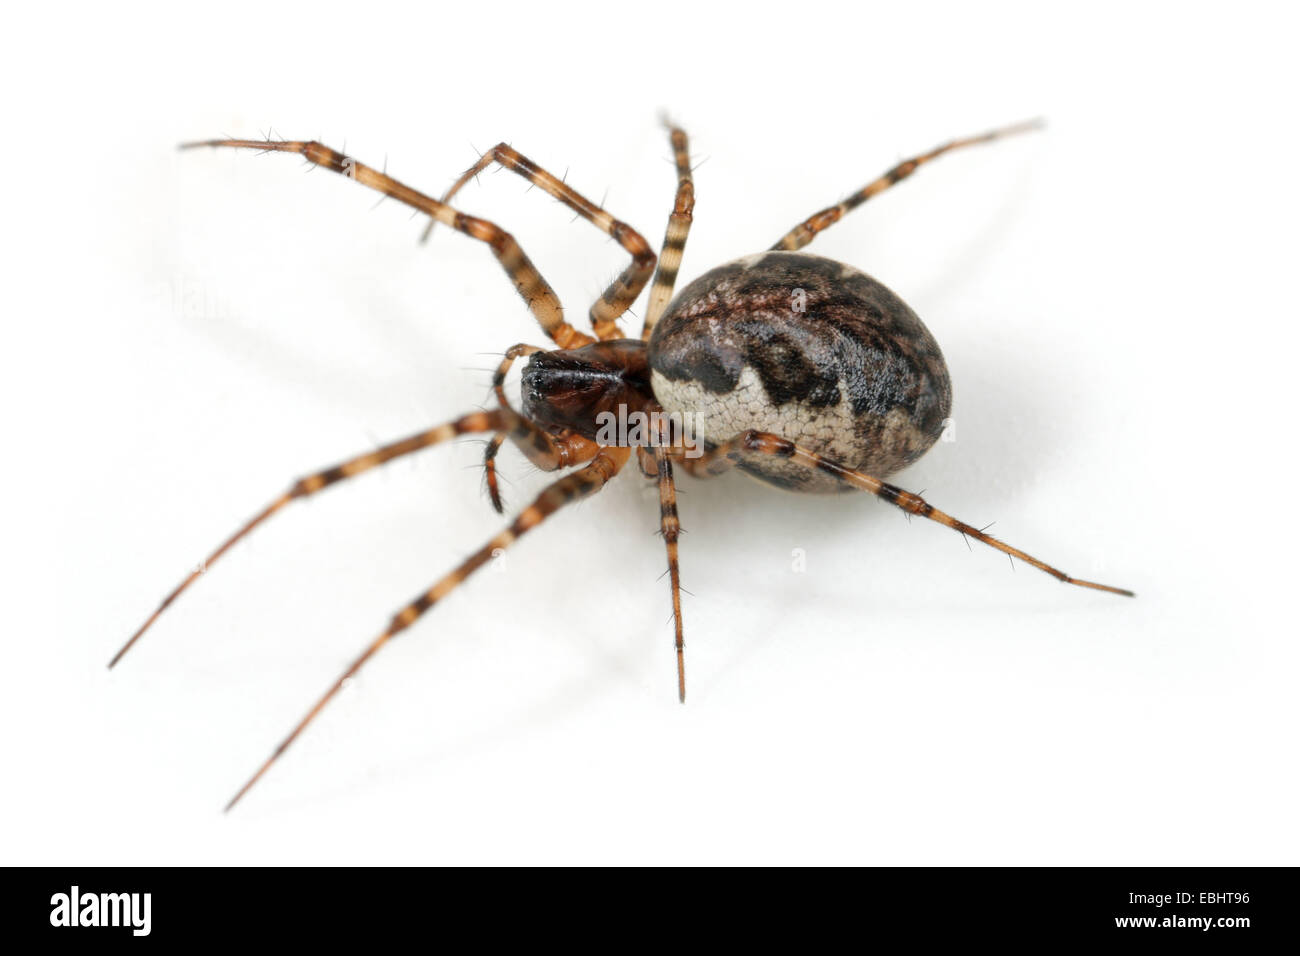 (Femelle Neriene montana) araignée sur un fond blanc, une partie de la famille des Amphinectidae, la Sheetweb weavers. Banque D'Images